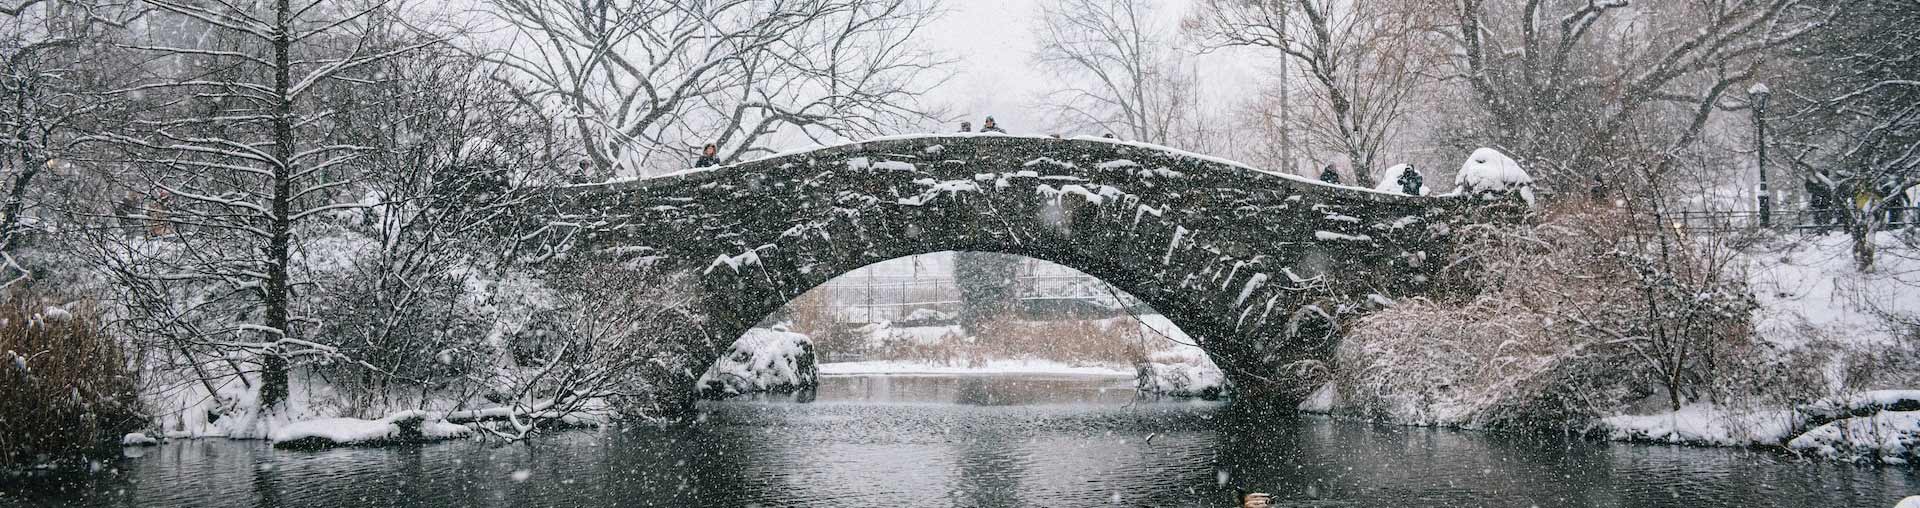 Central Park New York City sous la neige avec un pont en pierre en arrière-plan